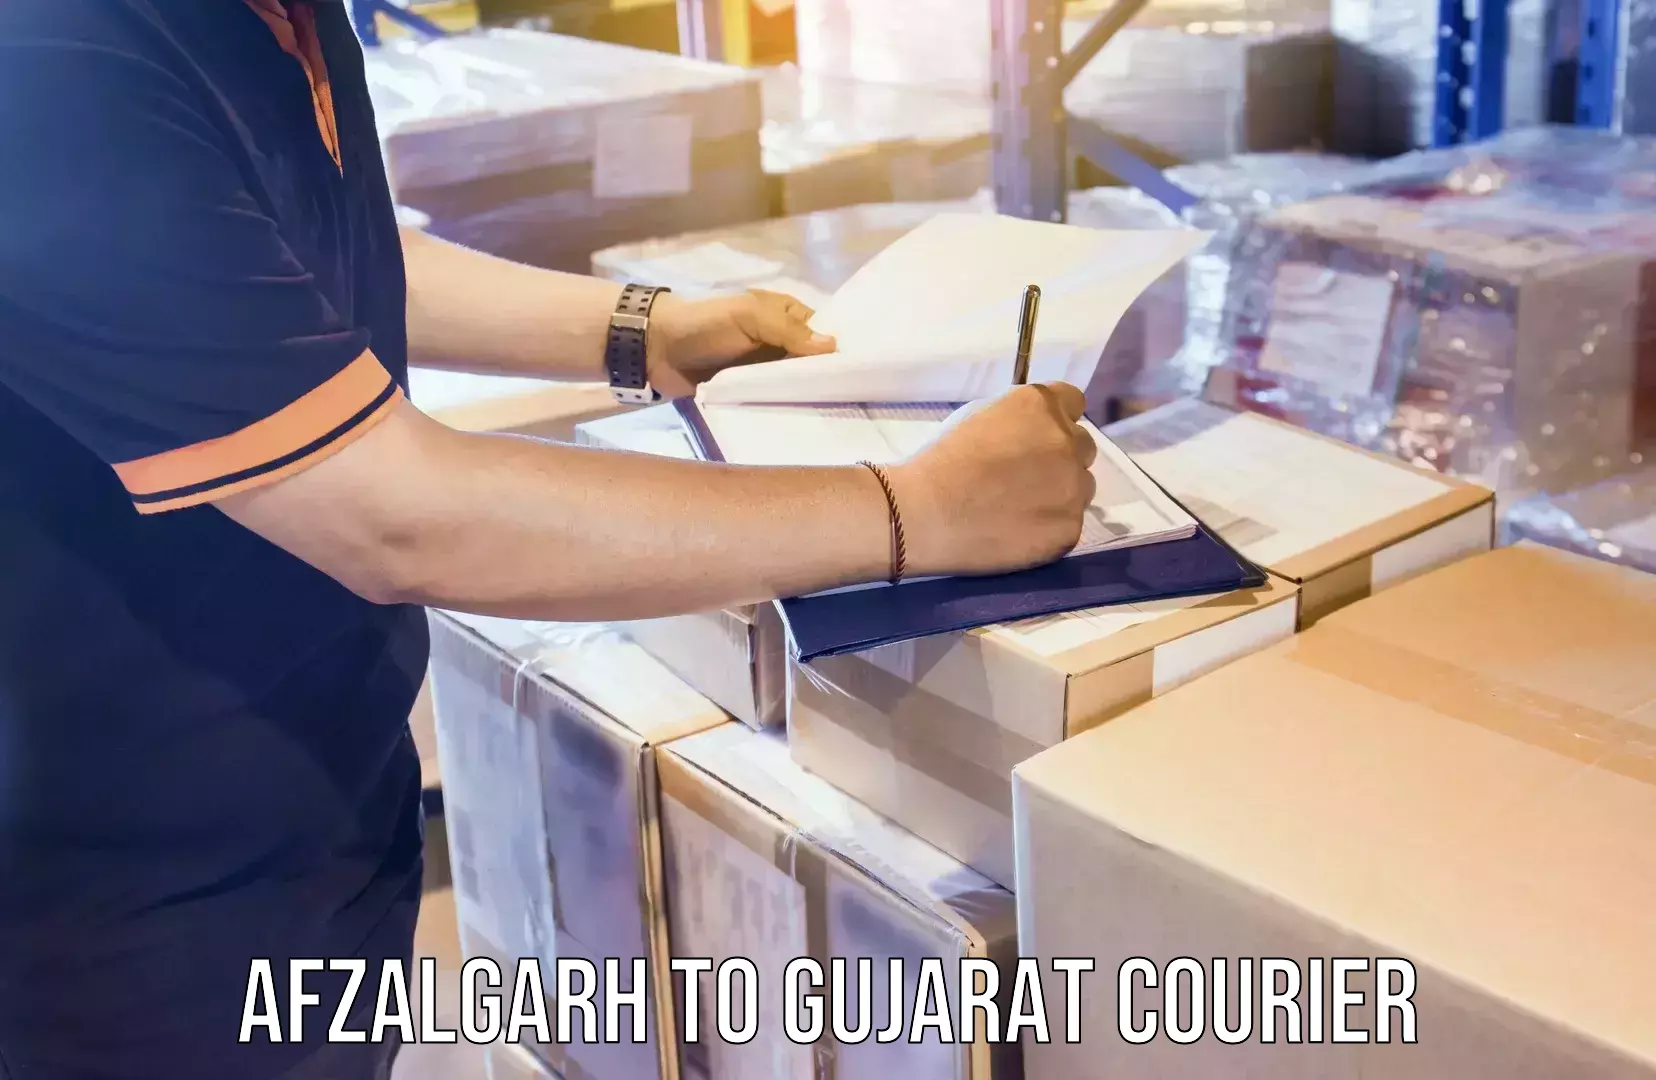 Delivery service partnership Afzalgarh to Gujarat